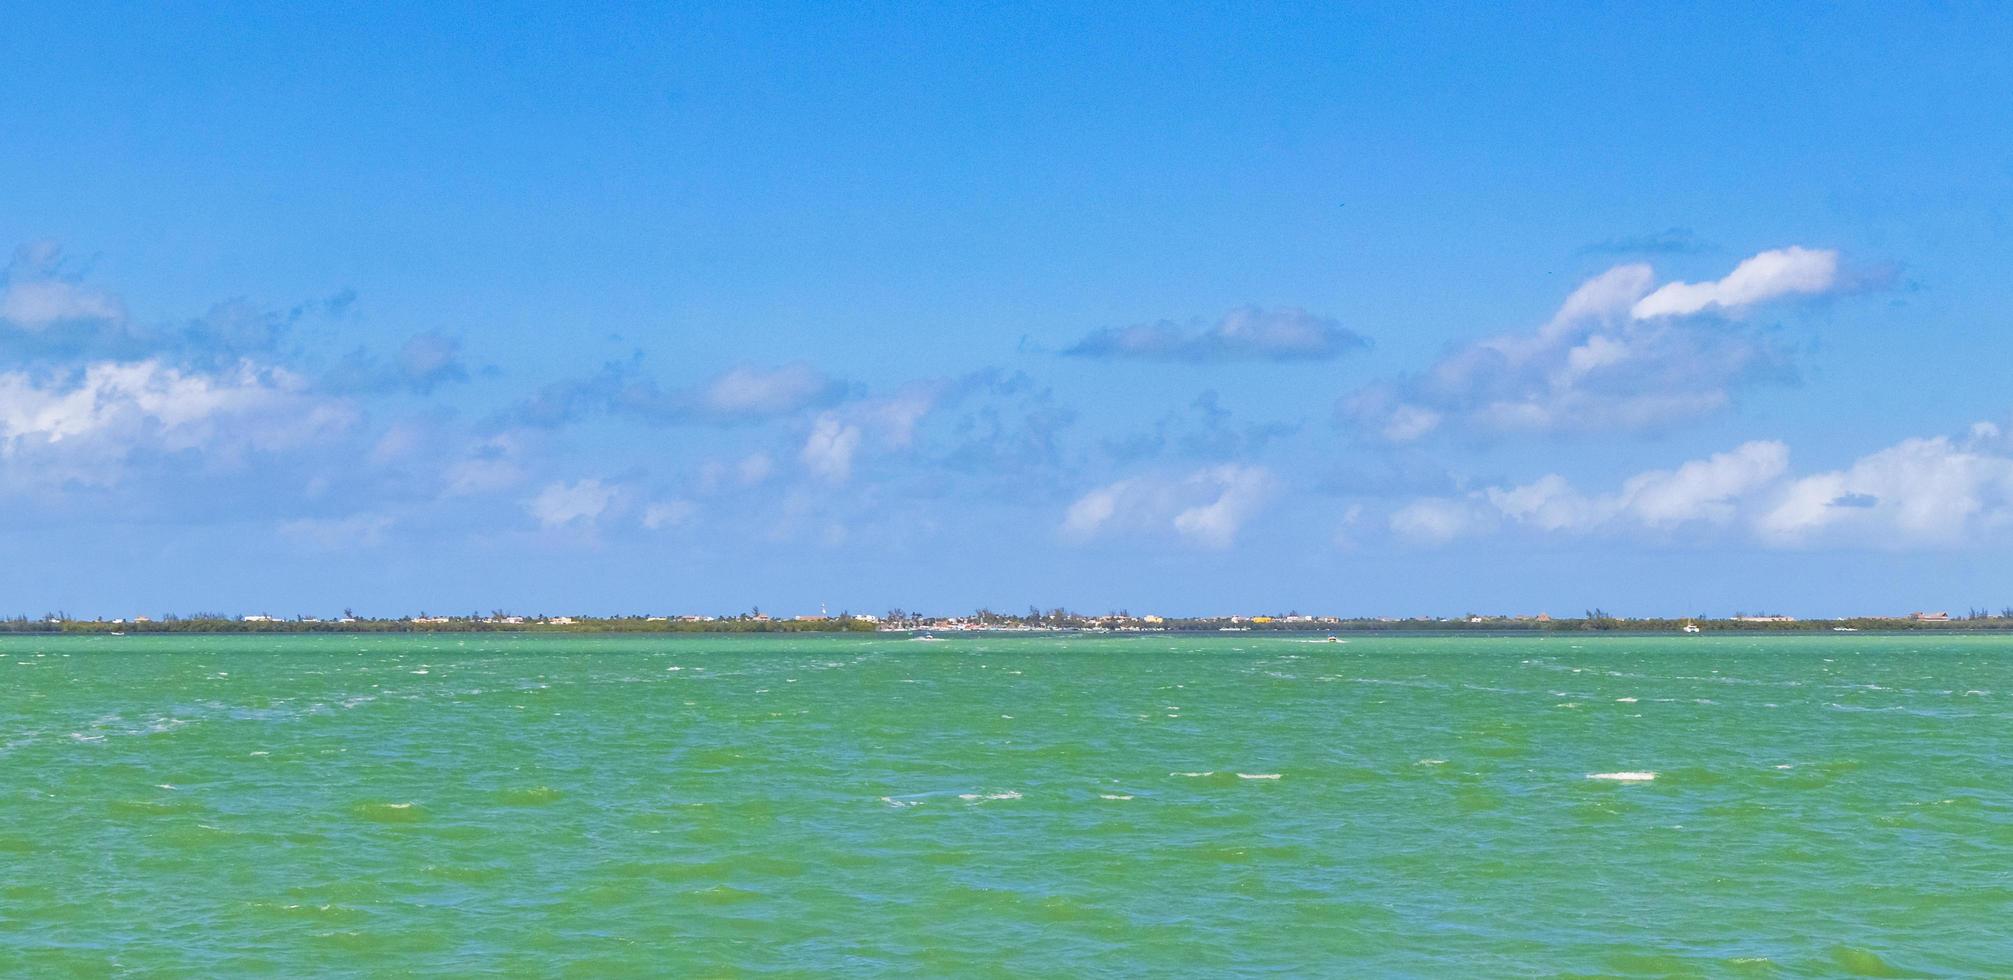 Panorama-Landschaftsblick auf schöne Holbox-Insel türkisfarbenes Wasser Mexiko. foto